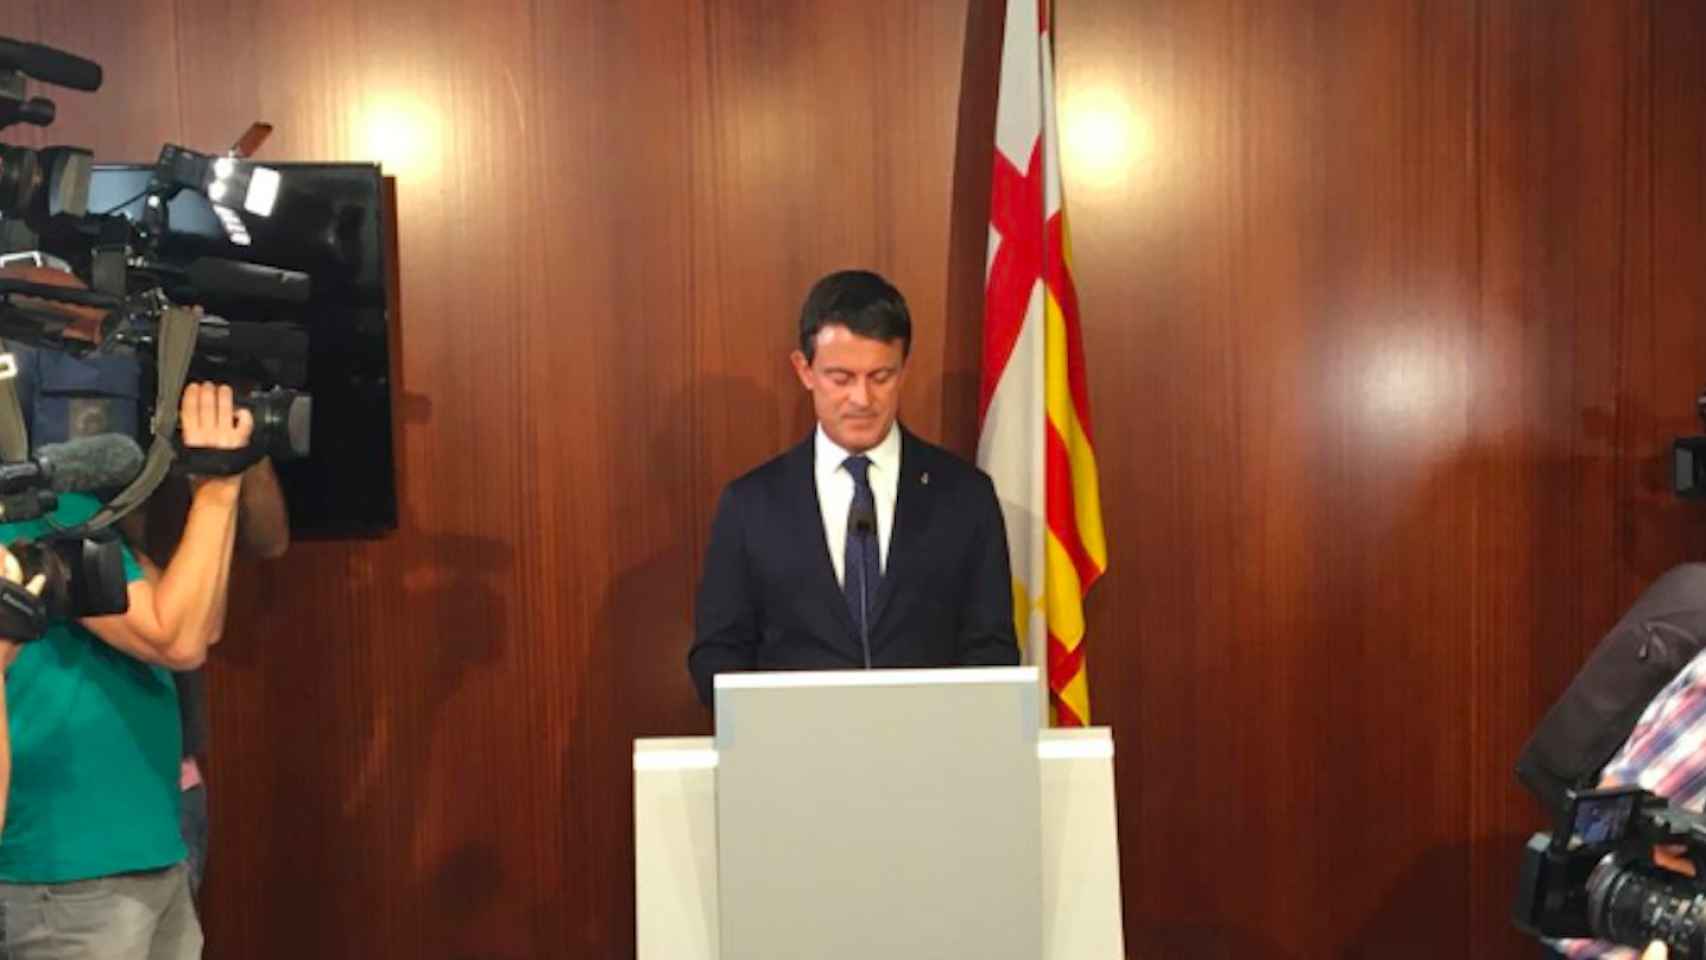 Rueda de prensa de Manuel Valls este miércoles en el Ayuntamiento de Barcelona / MA